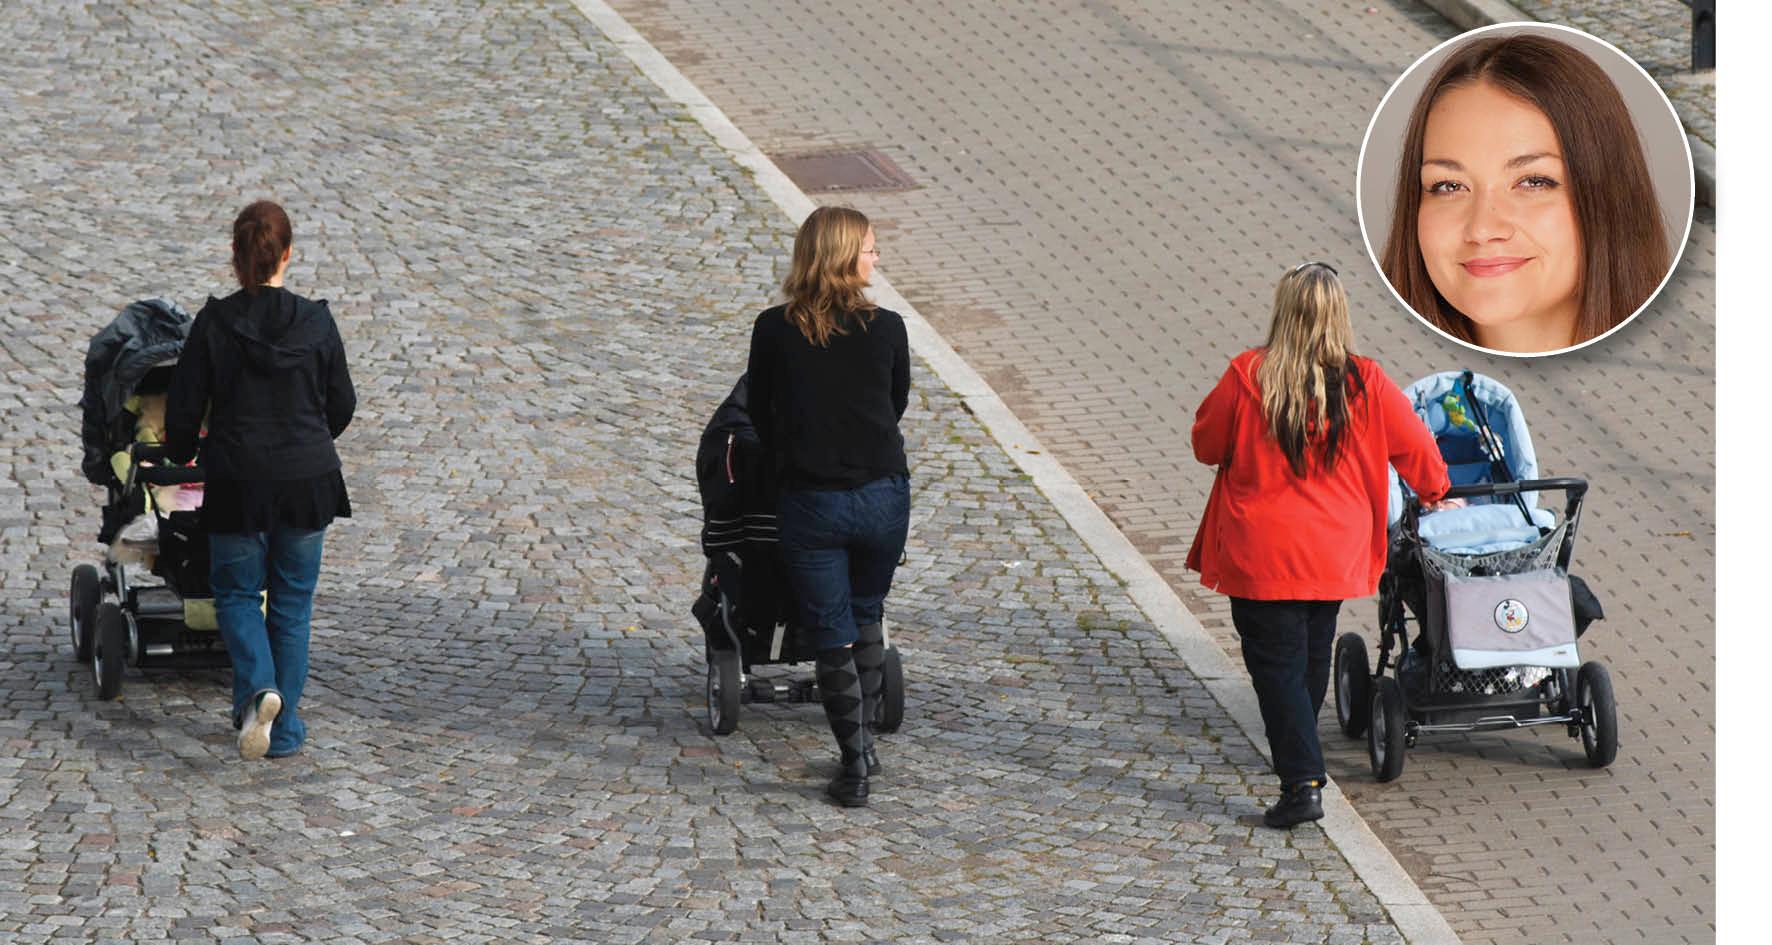 Medan barnvagnsmaffian organiserar sig för kvinnokampen på restauranger i Stockholms innerstad leder barnpolitiken låginkomstagare allt längre från köttgrytan, skriver Siri Steijer.